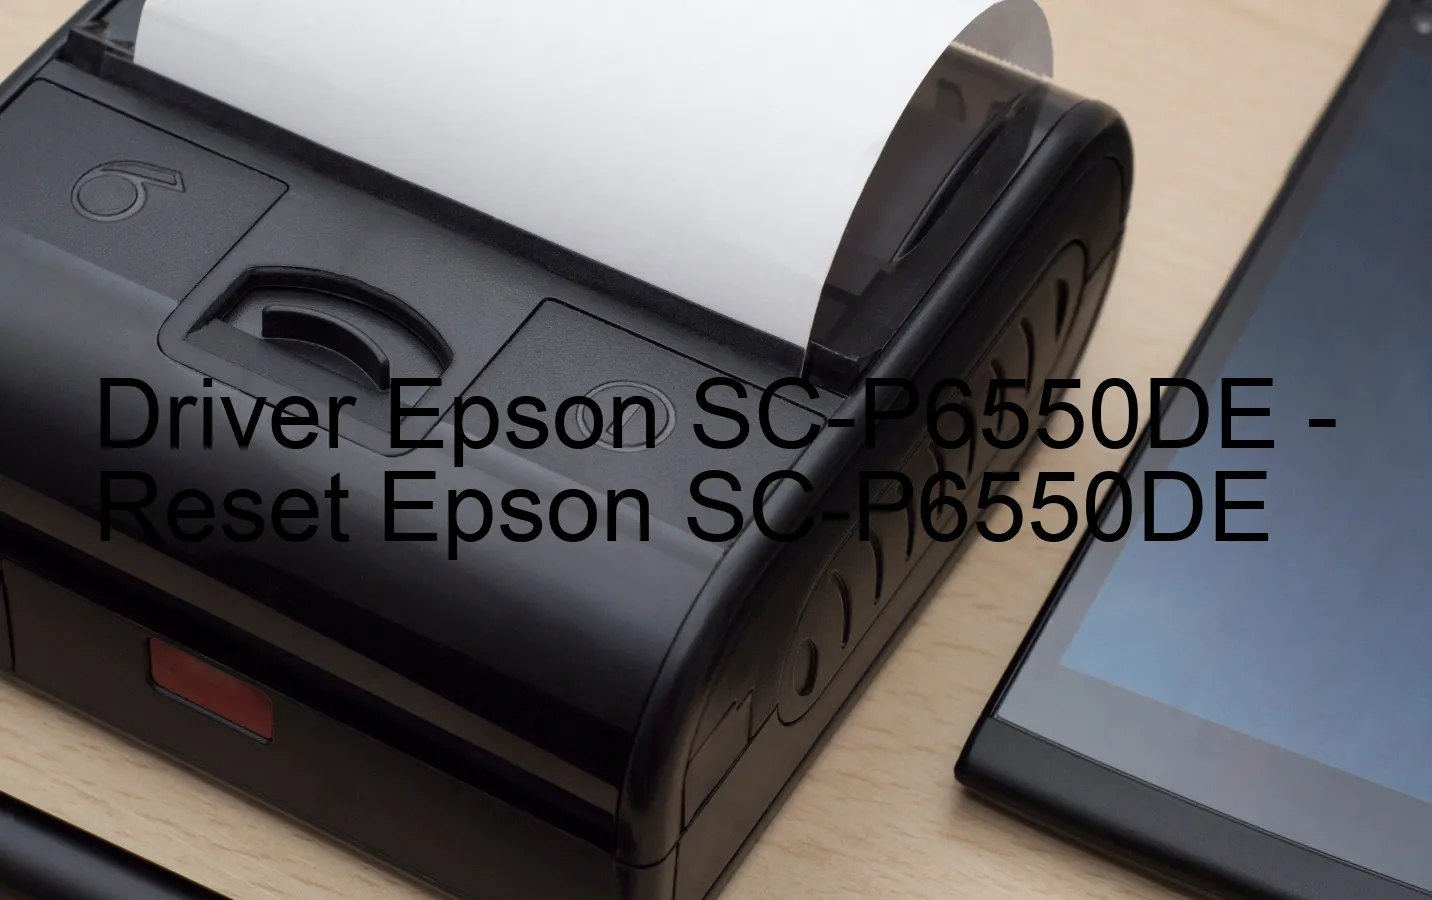 Epson SC-P6550DEのドライバー、Epson SC-P6550DEのリセットソフトウェア